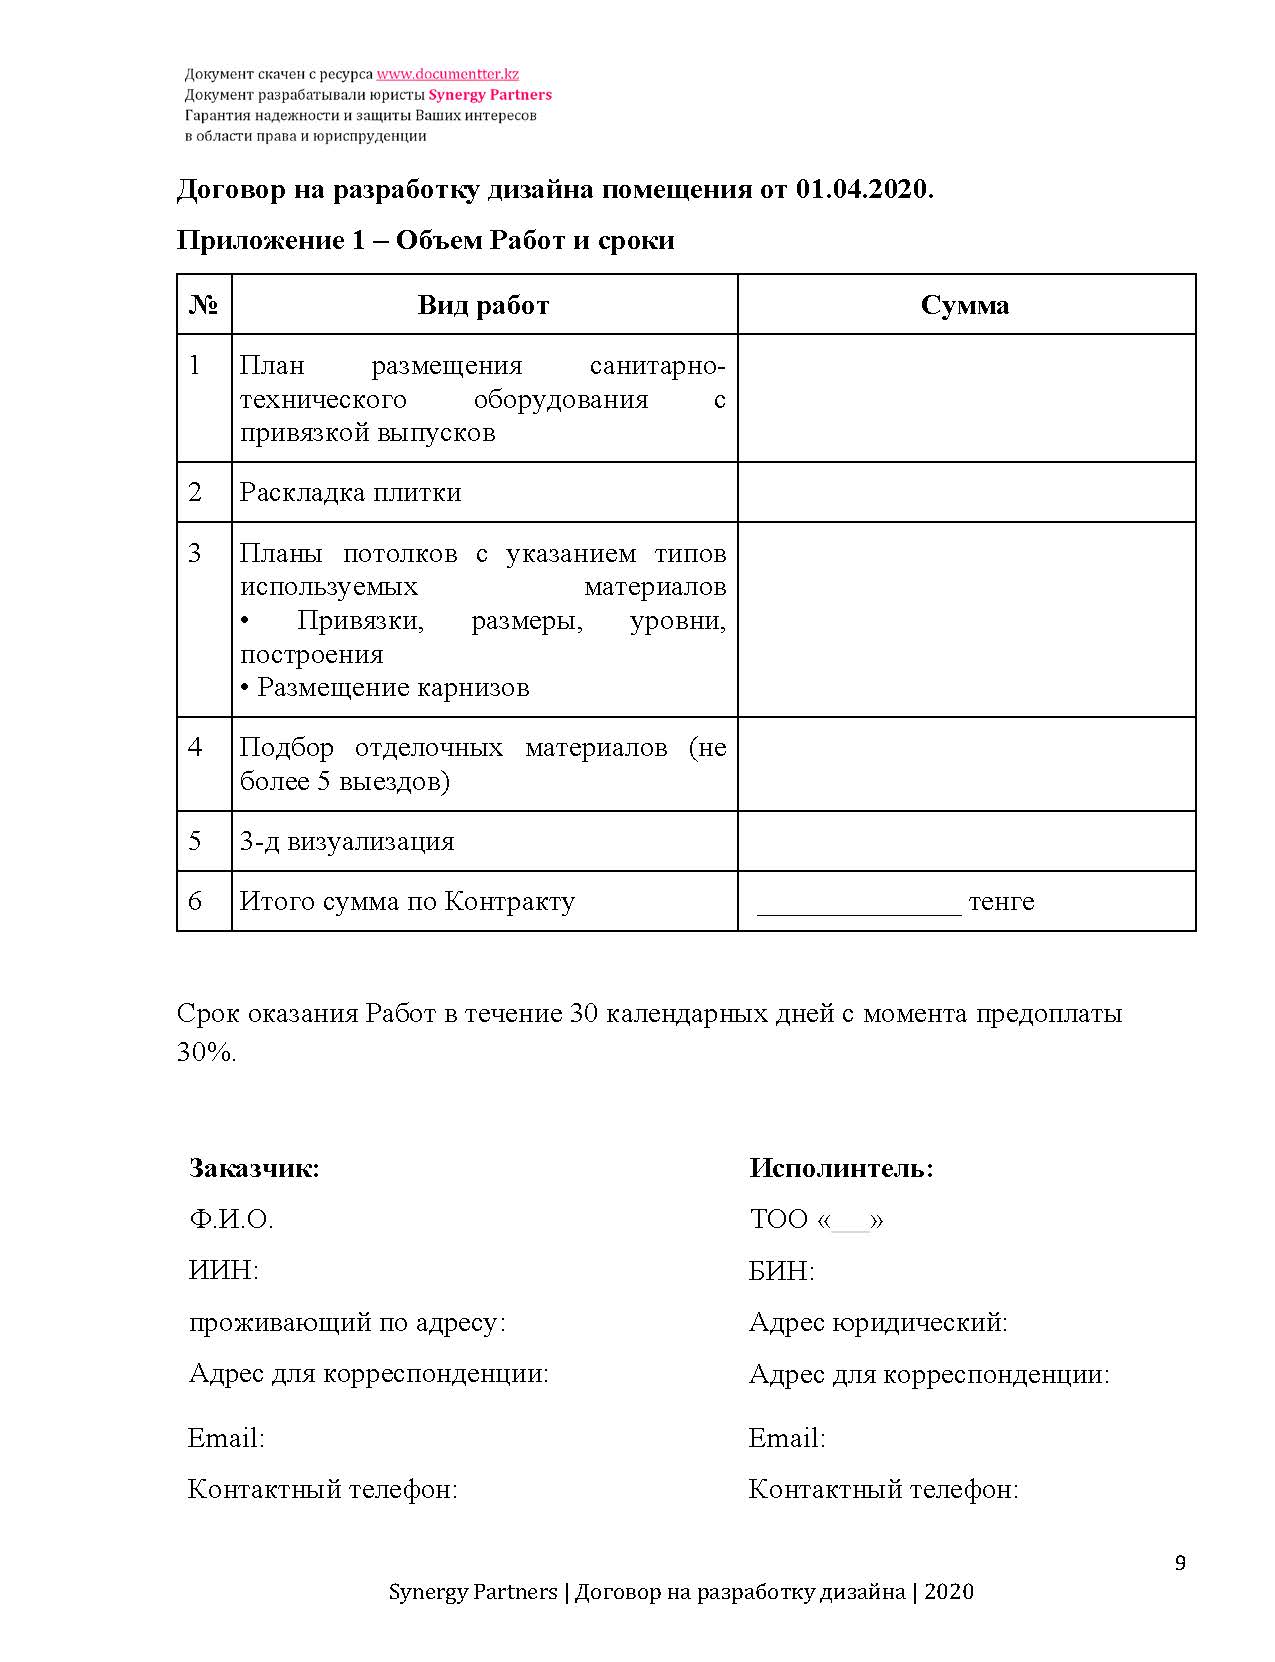 Договор дизайна помещения | documentterkz.com в Казахстане